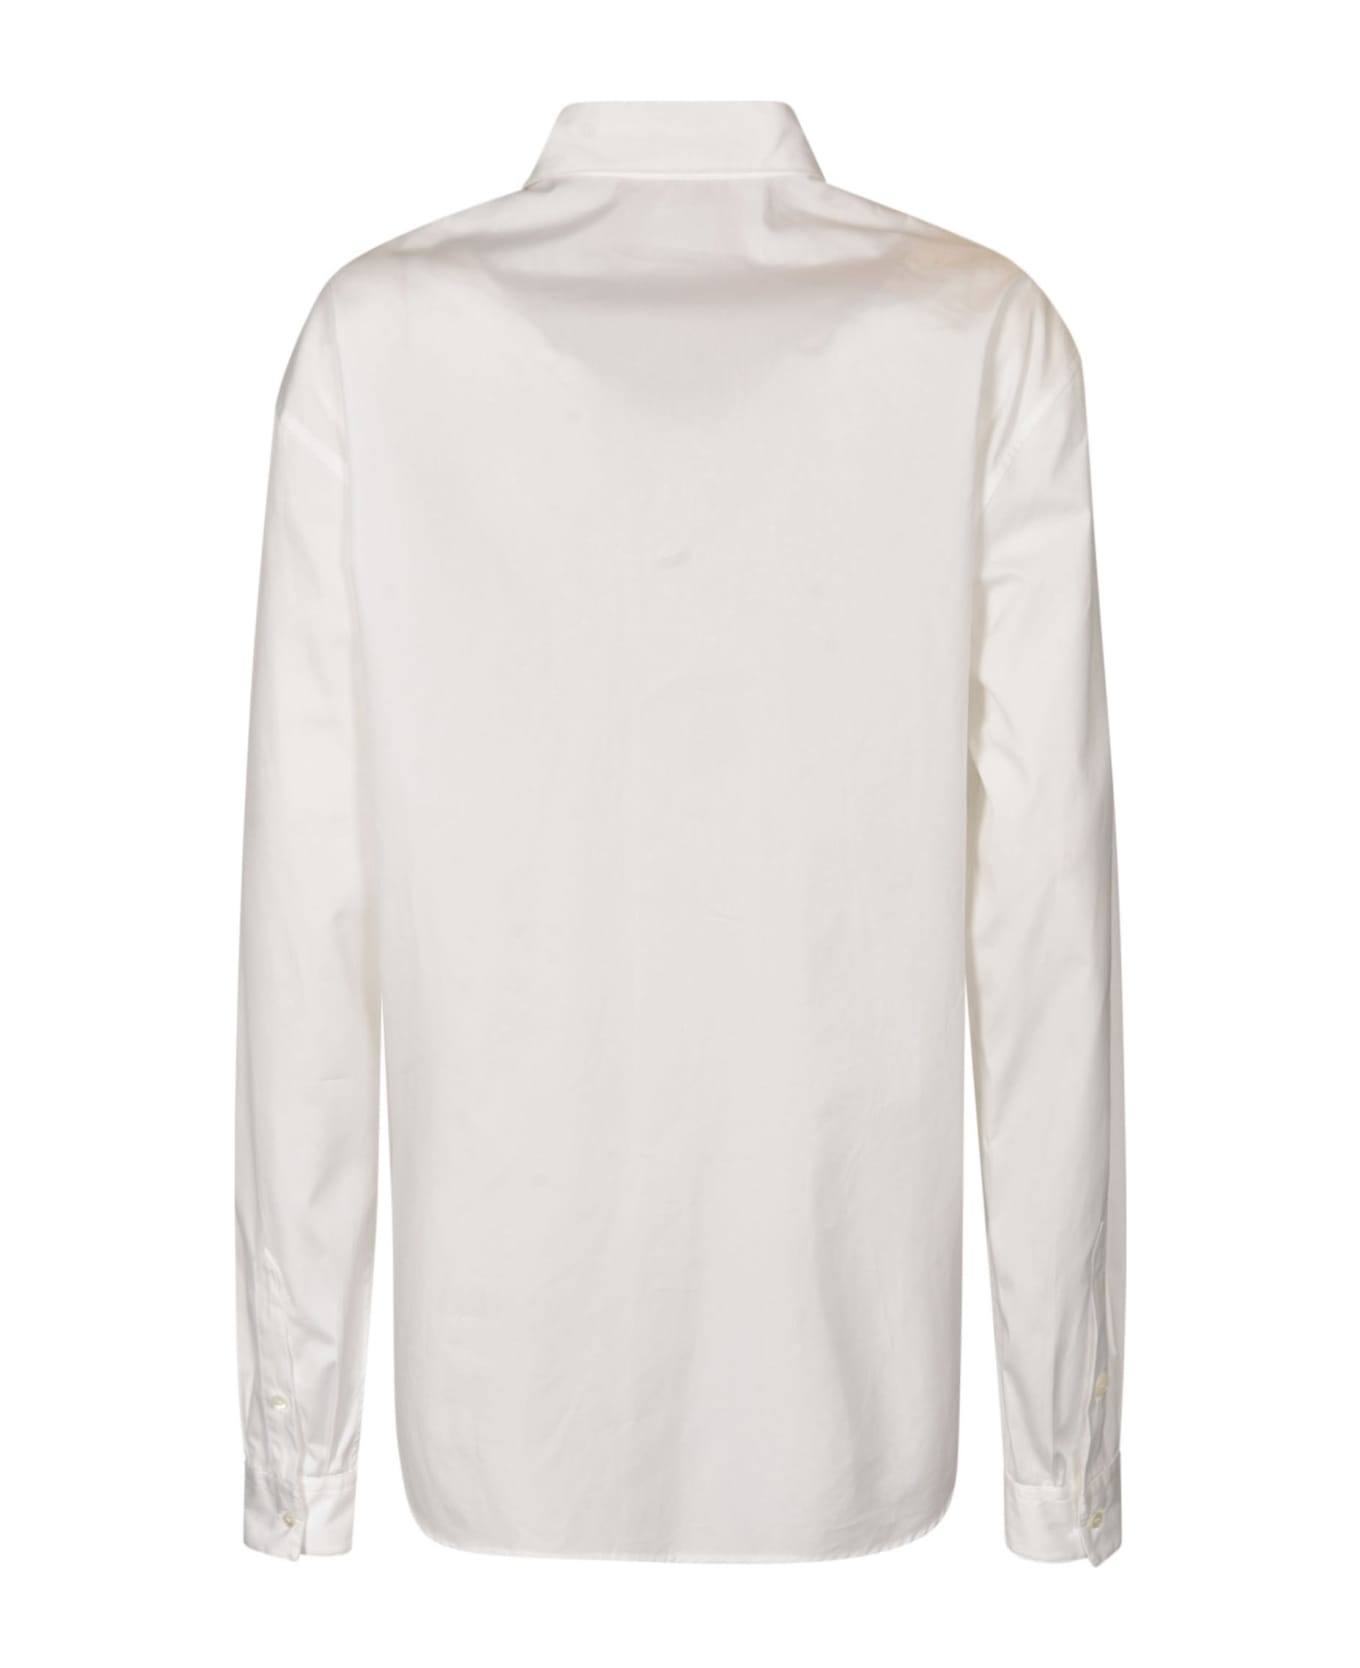 N.21 Long-sleeved Shirt - White シャツ